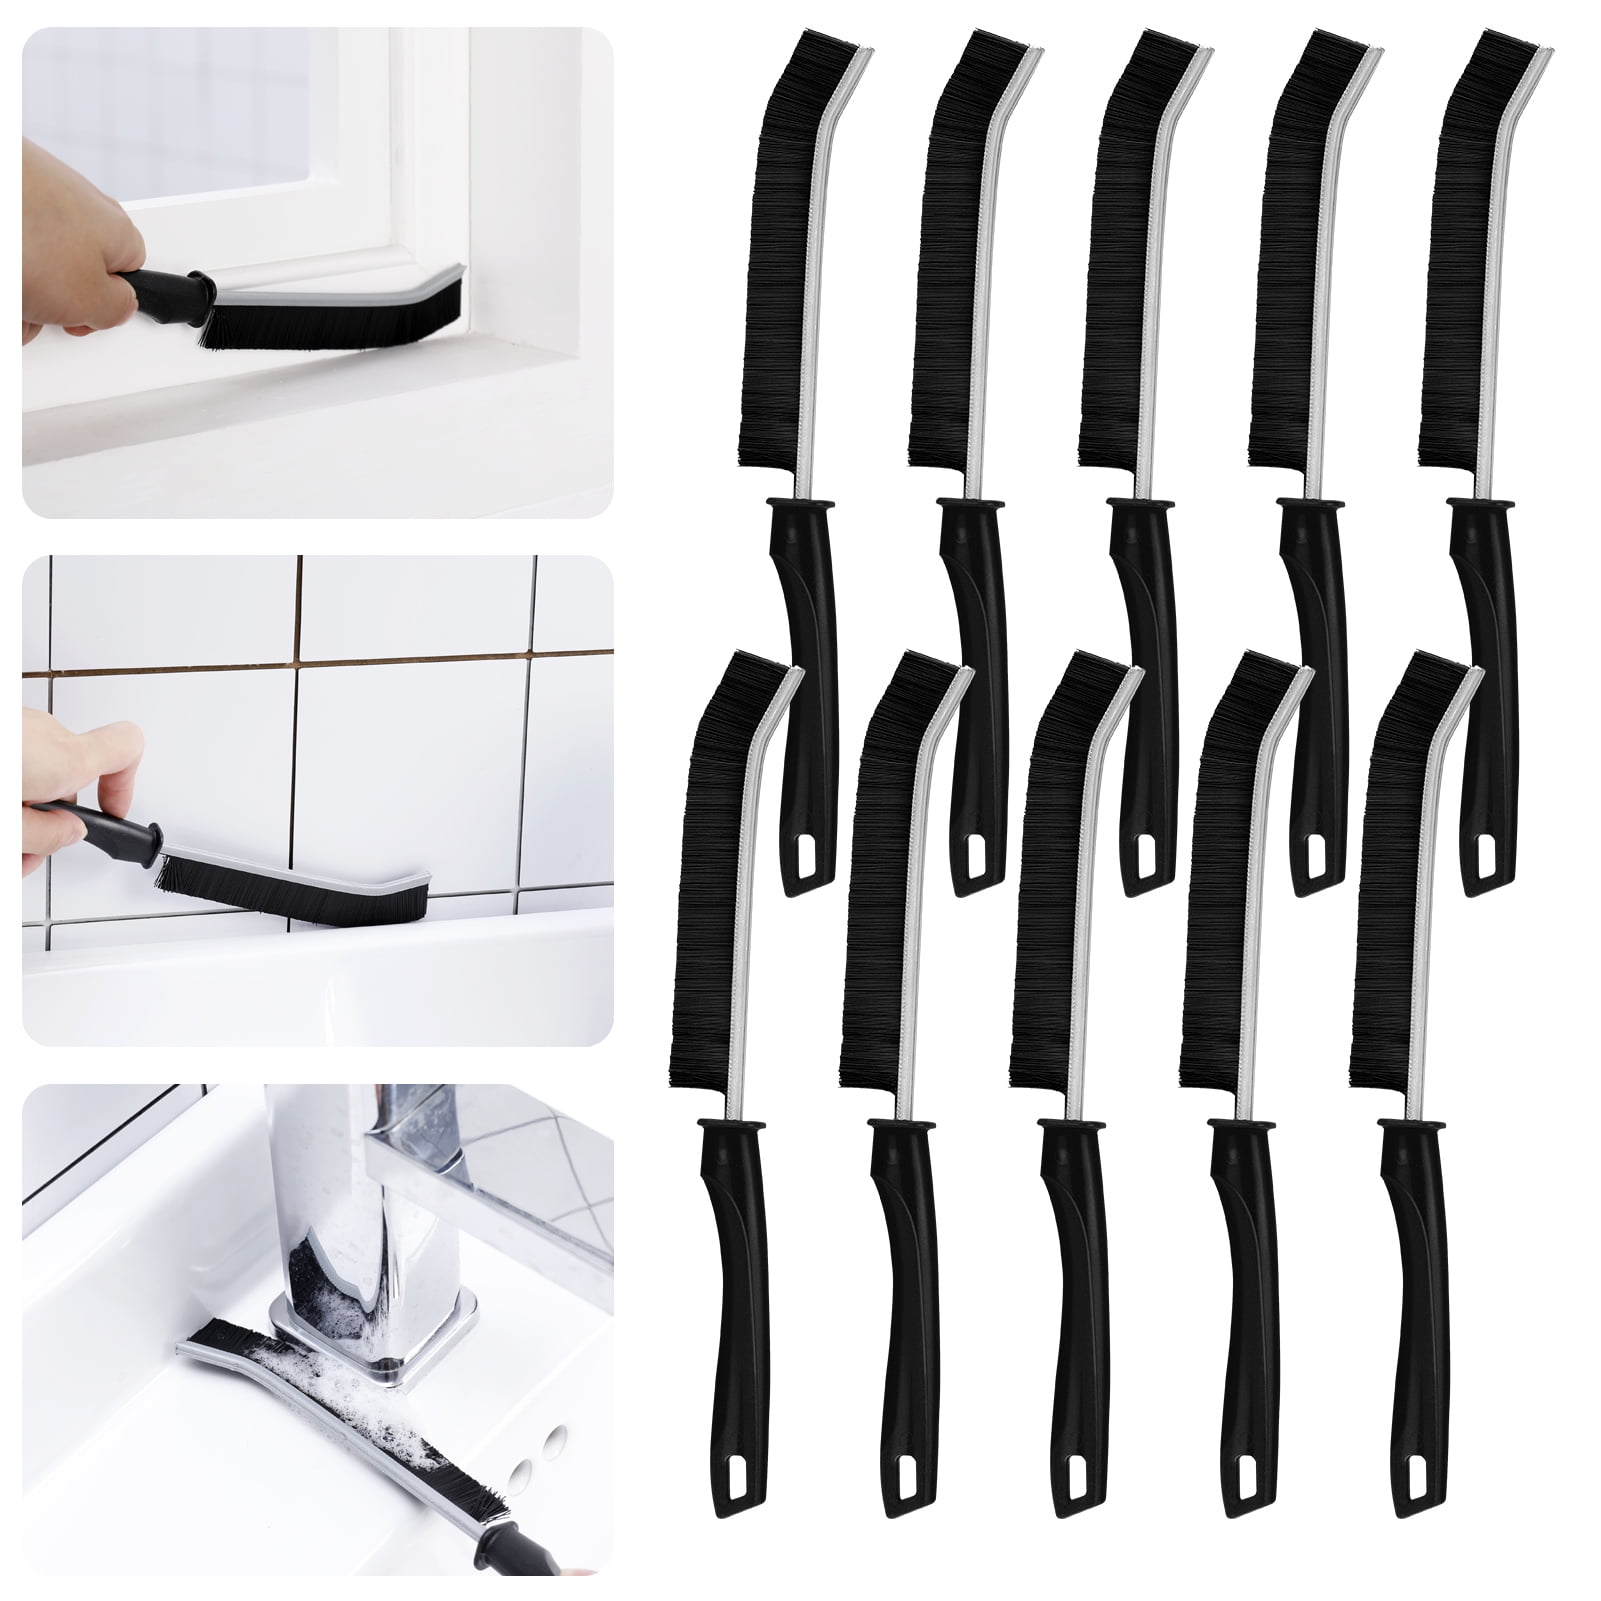 LEOBRO Hand-held Groove Gap Cleaning Tools Door Window Track